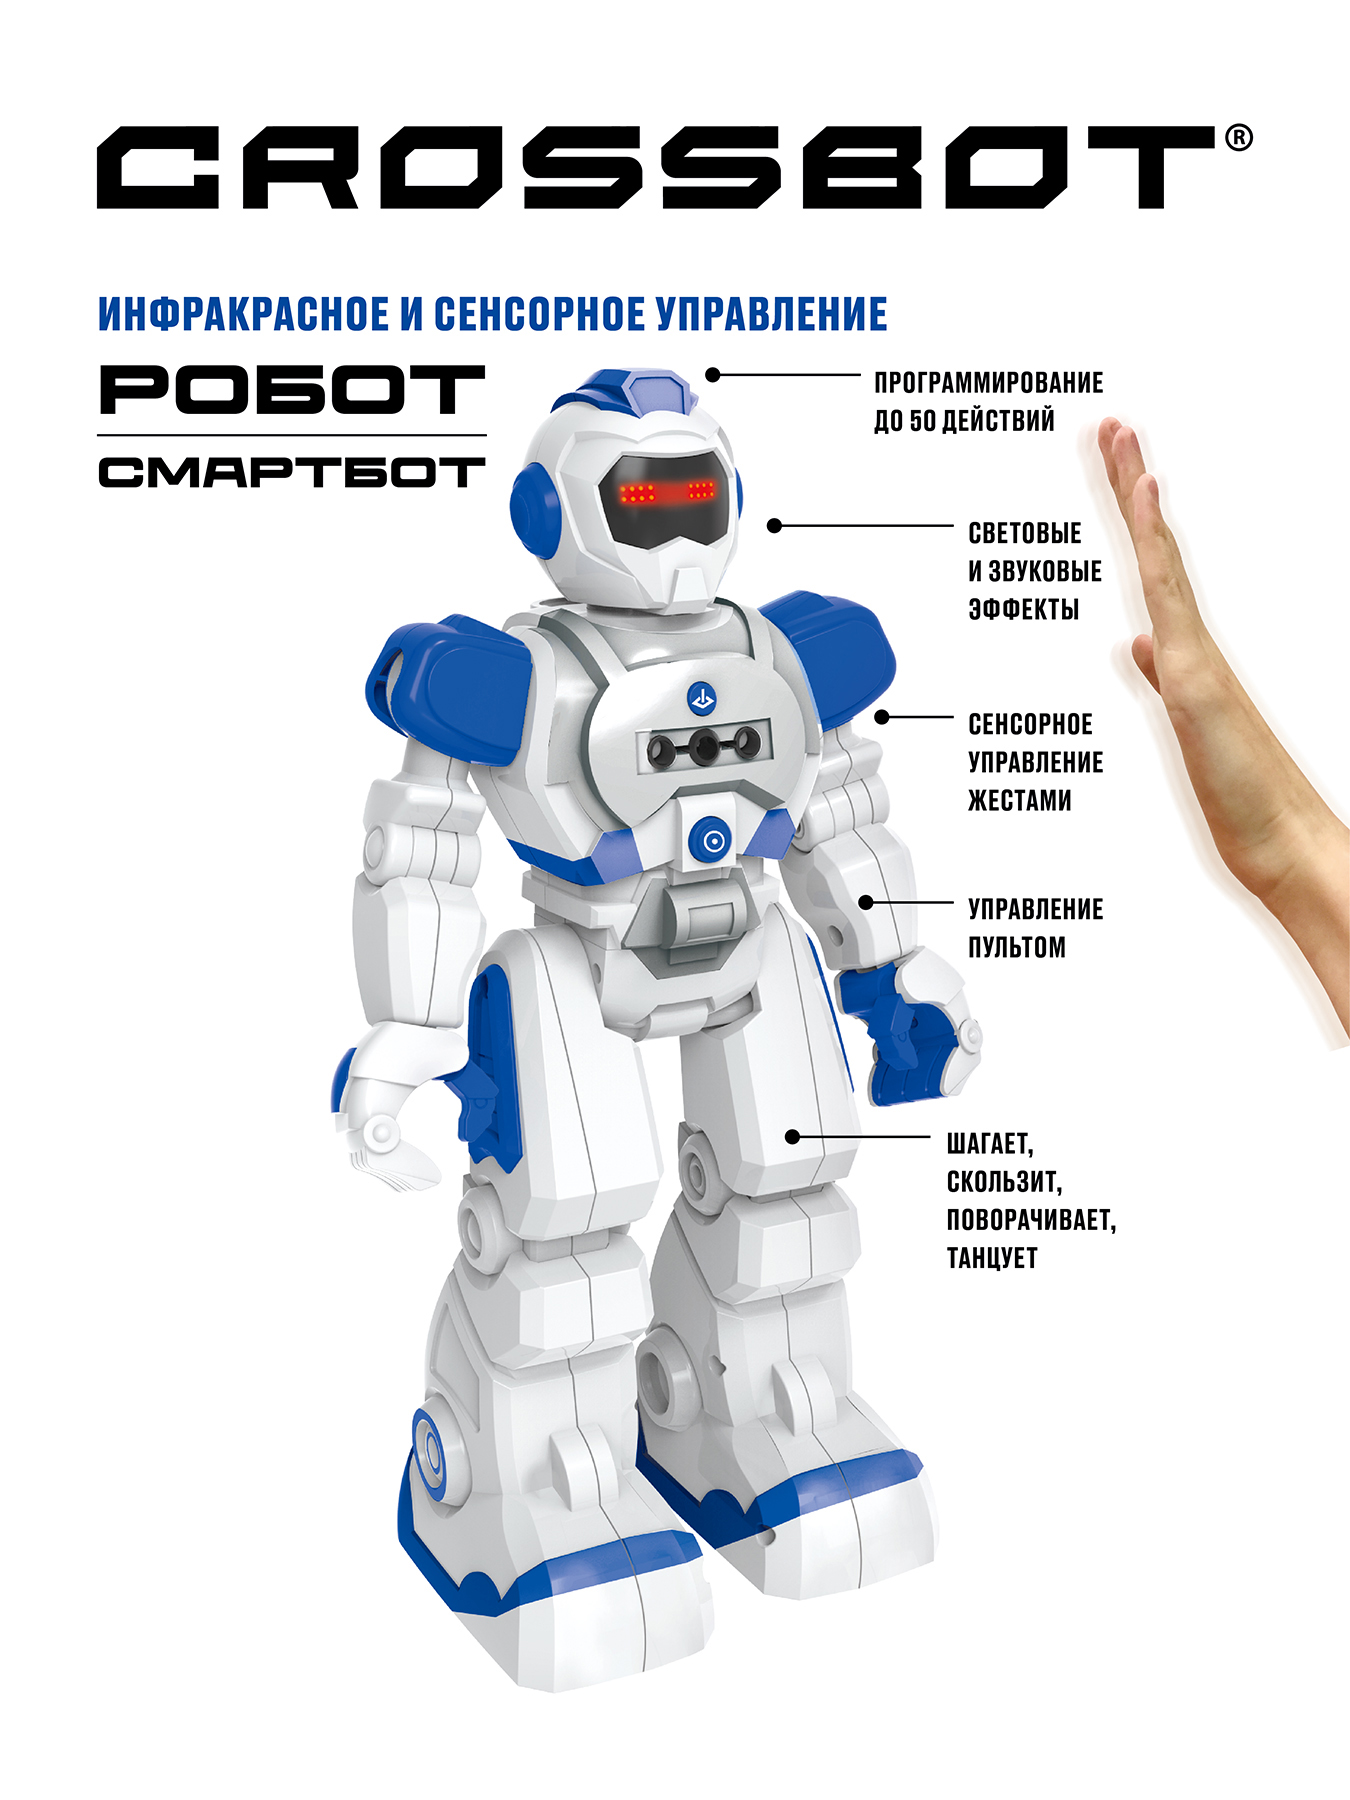 Робот CROSSBOT Смартбот ИК-управление - фото 1